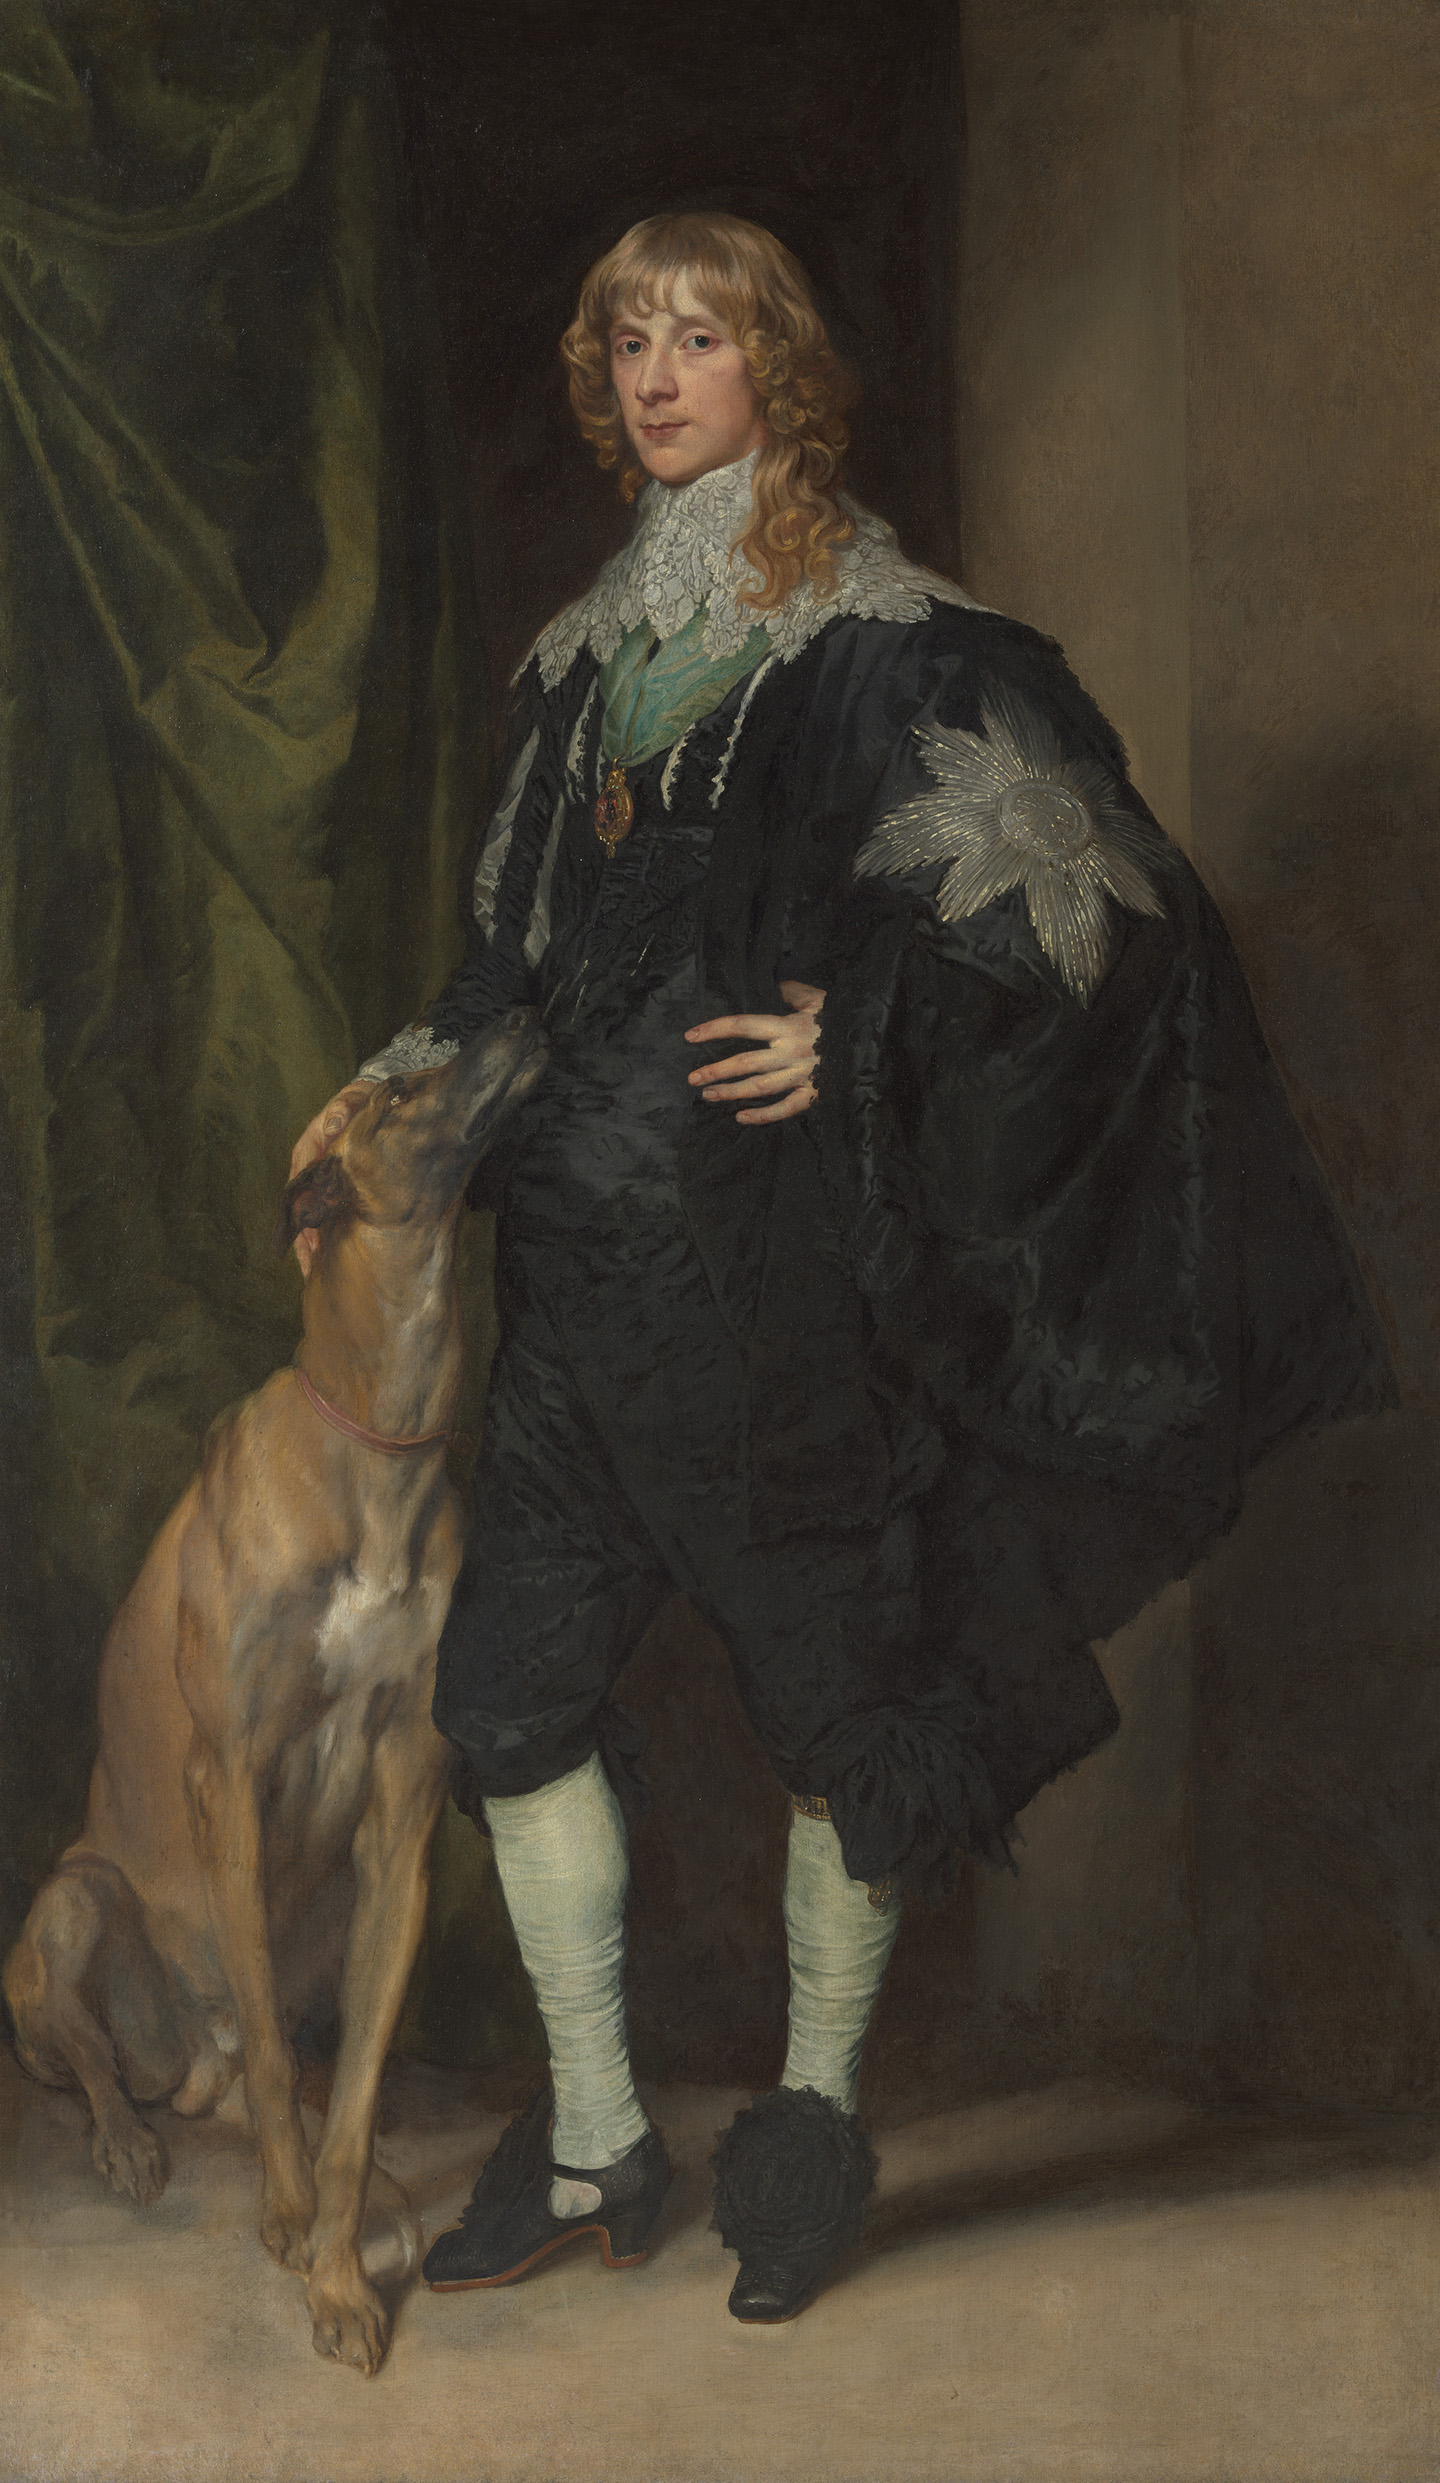 Bức tranh “James Stuart (1612–1655), Duke of Richmond and Lennox” (James Stuart (1612-1655), Công tước xứ Richmond và Lennox) của hoạ sỹ Anthony van Dyck), khoảng năm 1633-1635. Sơn dầu trên vải canvas; 85 inches x 50 ¼ inches (~ 2,2m x 1,3m). Bảo tàng Nghệ thuật Metropolitan, thành phố New York. (Ảnh: Tư liệu công cộng)